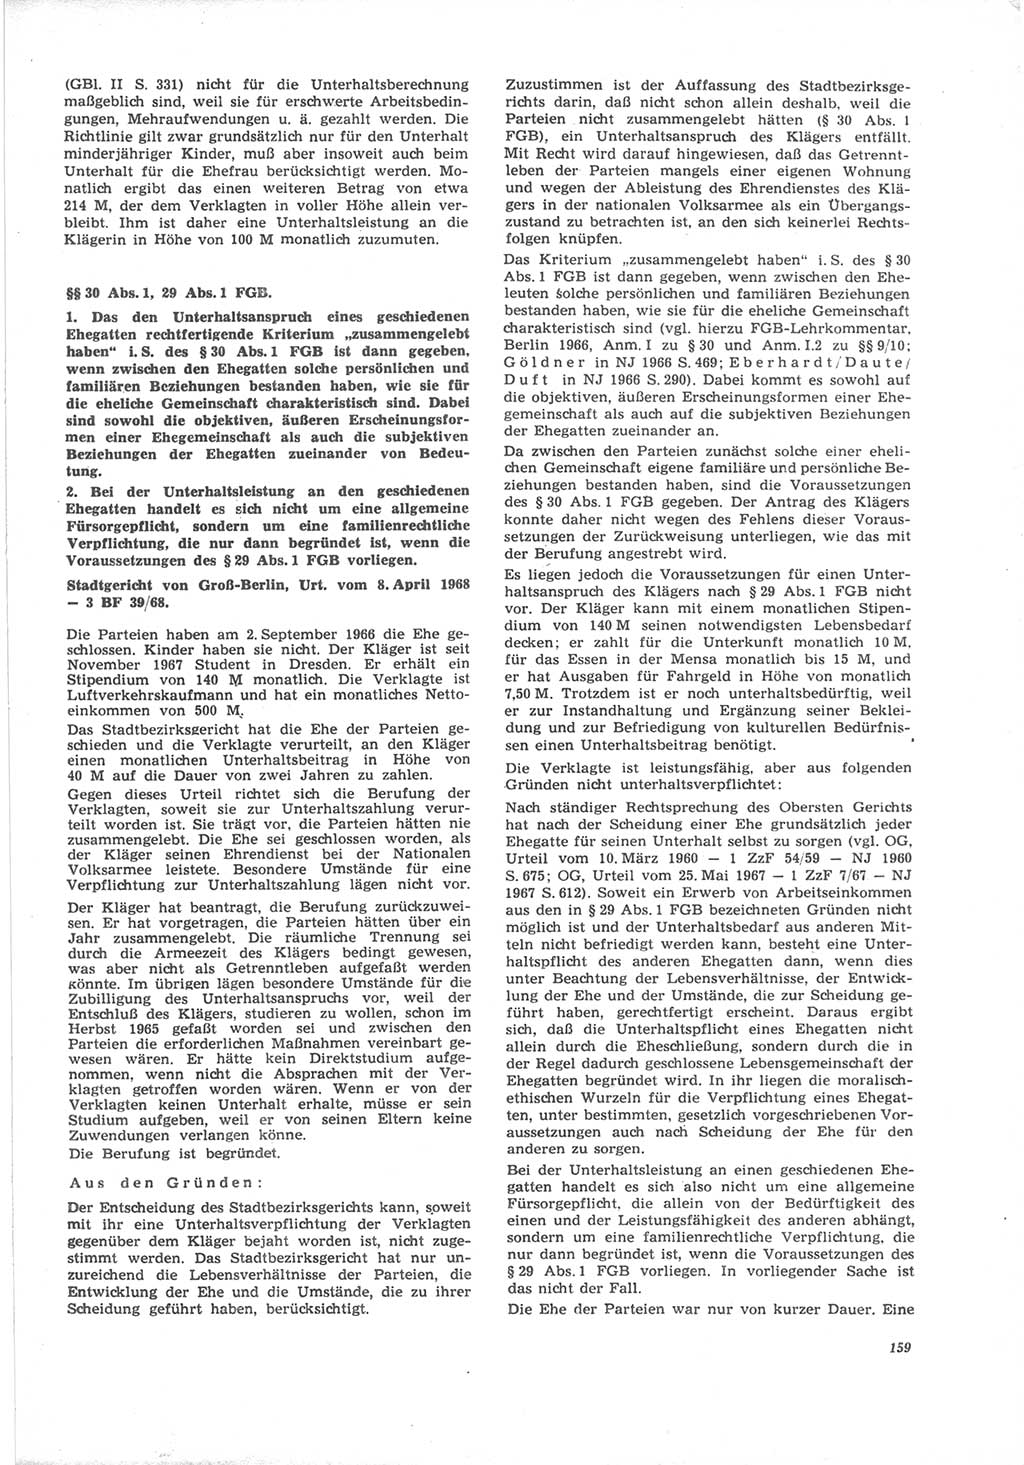 Neue Justiz (NJ), Zeitschrift für Recht und Rechtswissenschaft [Deutsche Demokratische Republik (DDR)], 24. Jahrgang 1970, Seite 159 (NJ DDR 1970, S. 159)